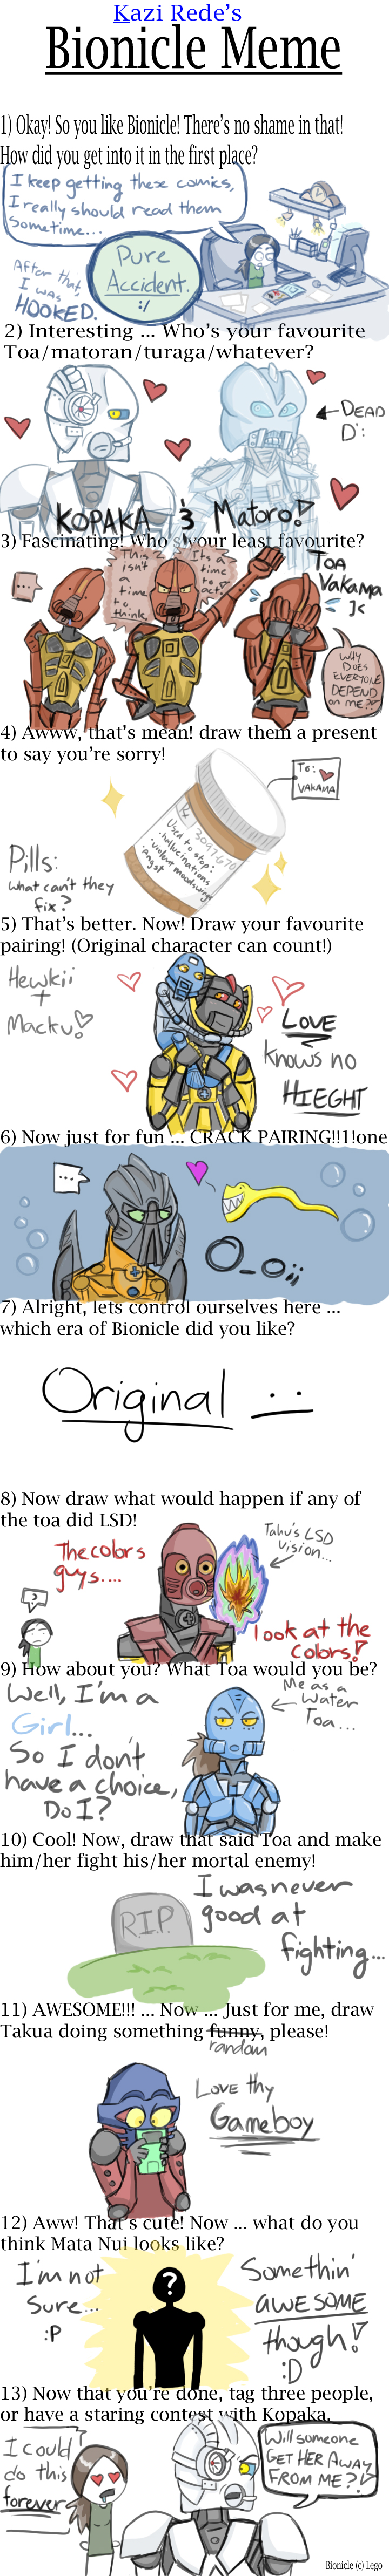 http://fc00.deviantart.net/fs29/f/2008/049/7/0/Bionicle_meme_by_Jspx.jpg